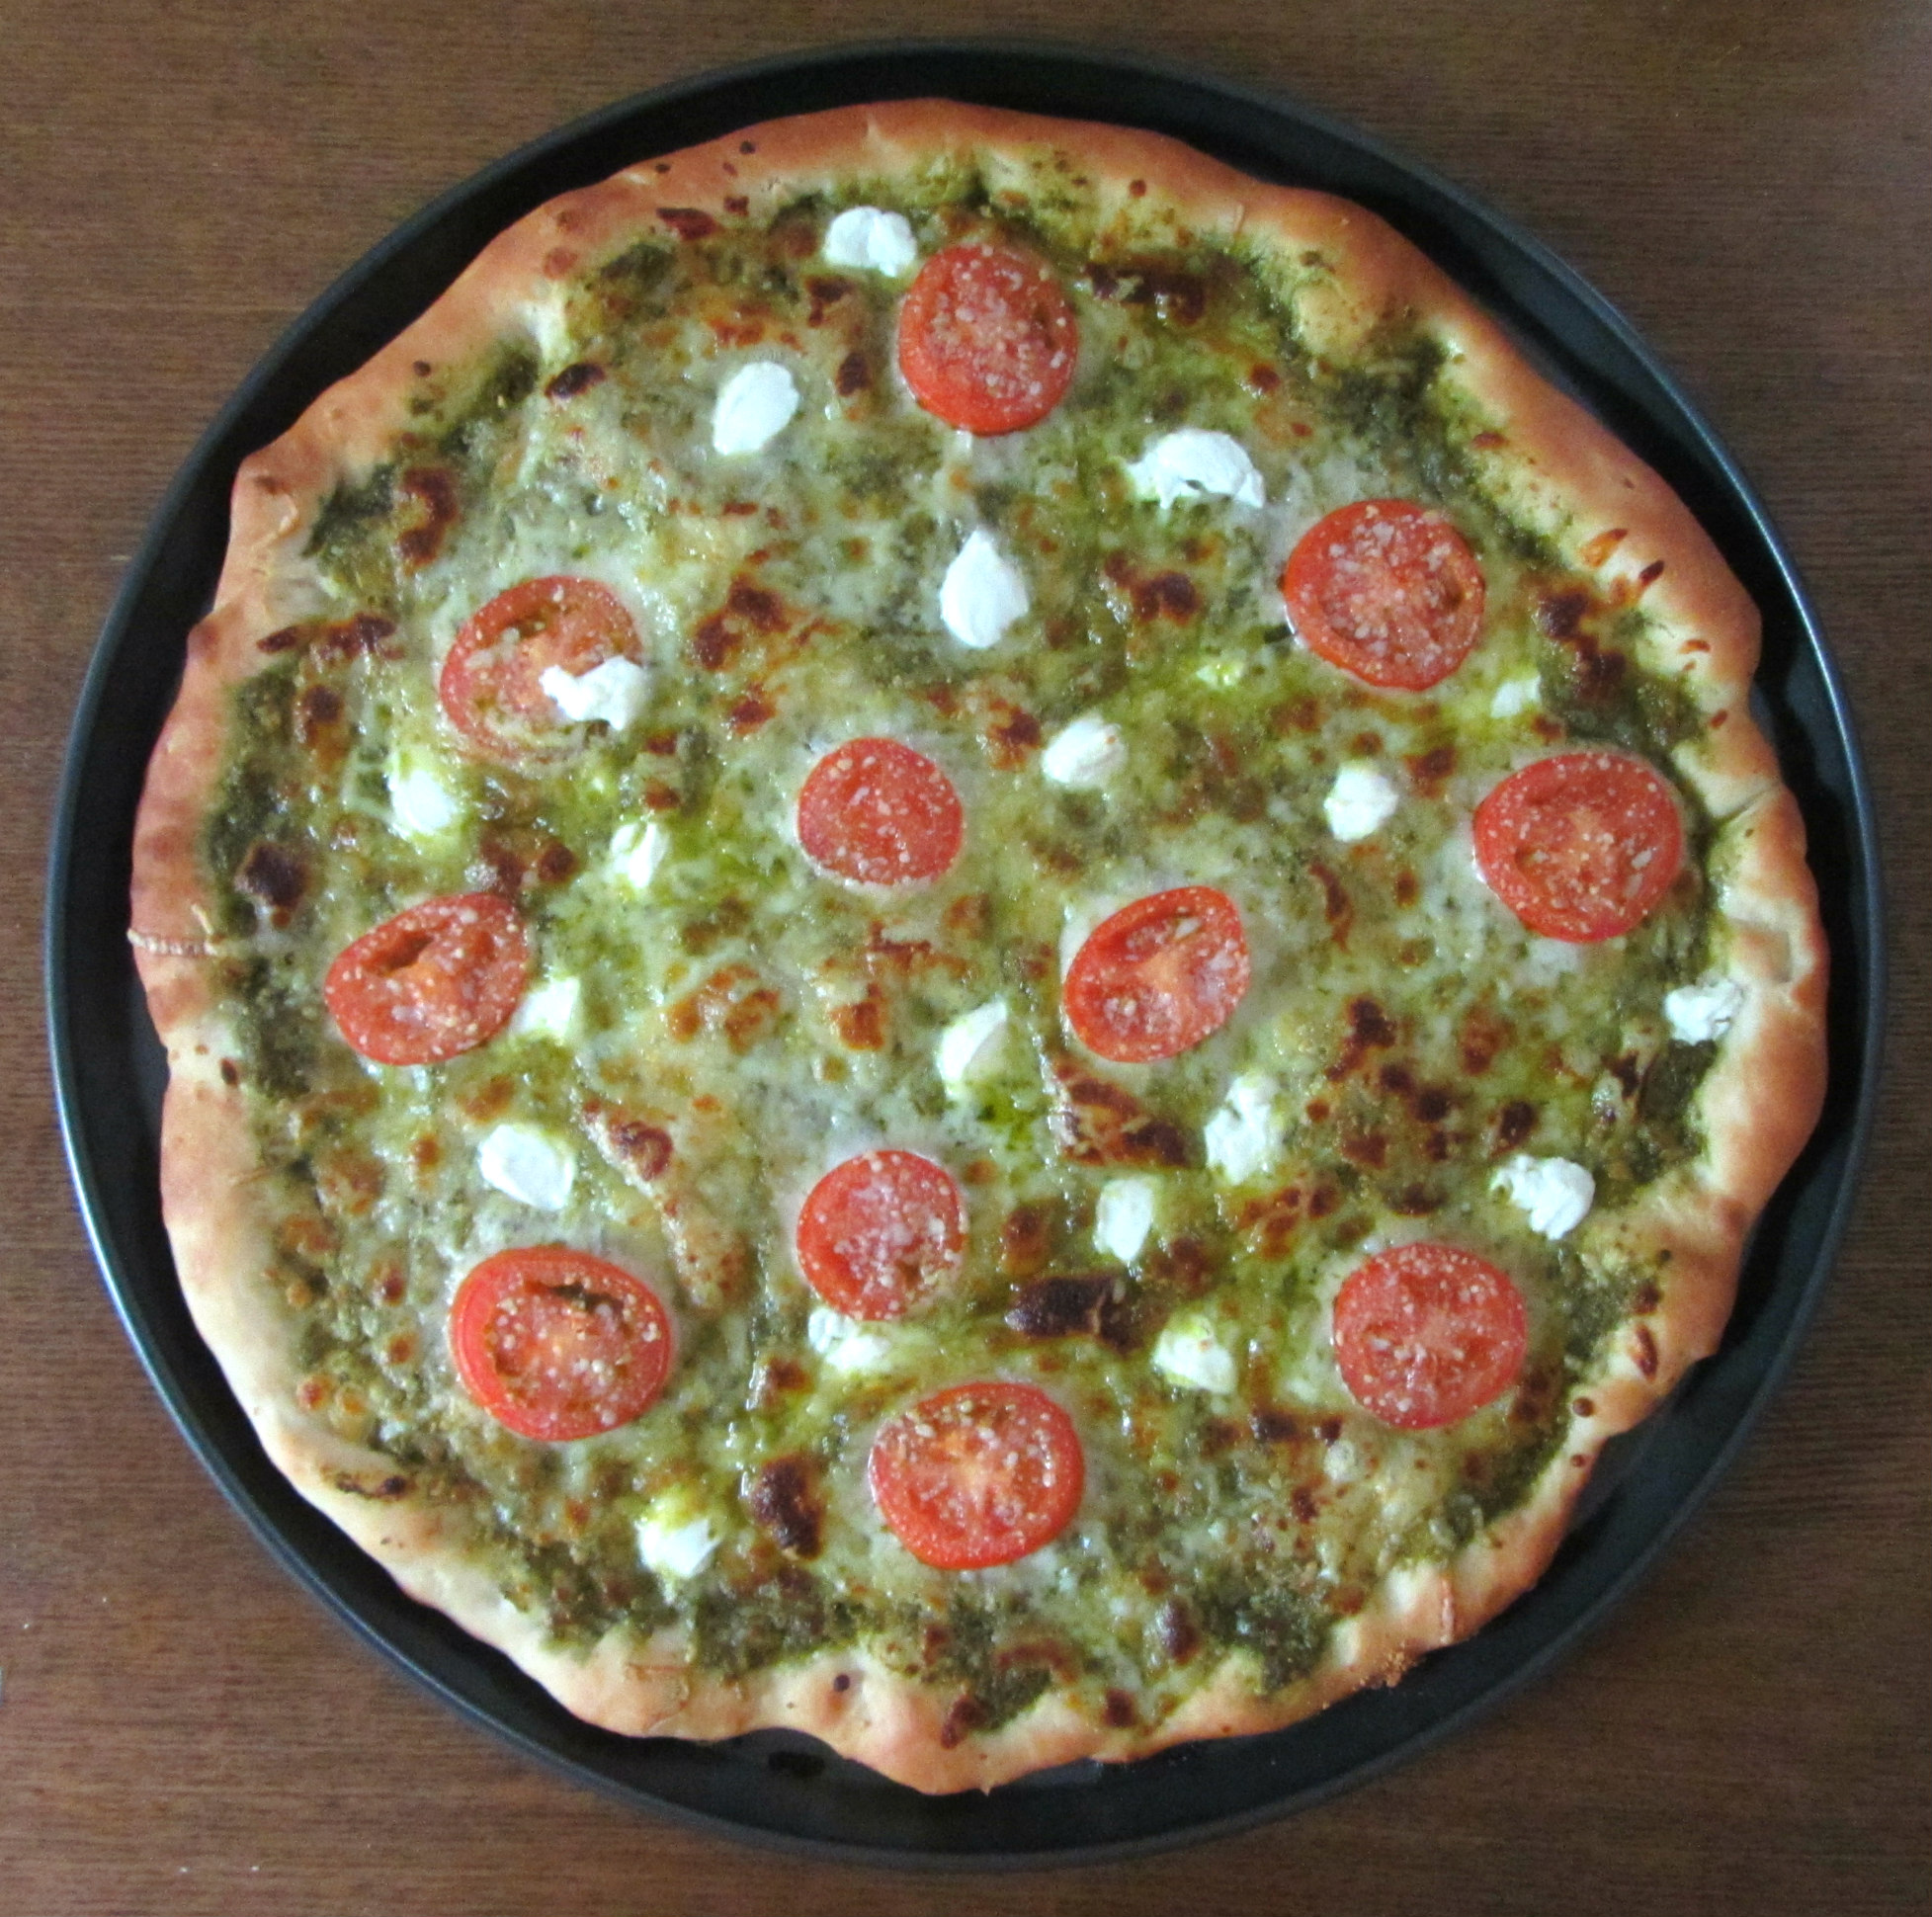 Pesto pizza whole